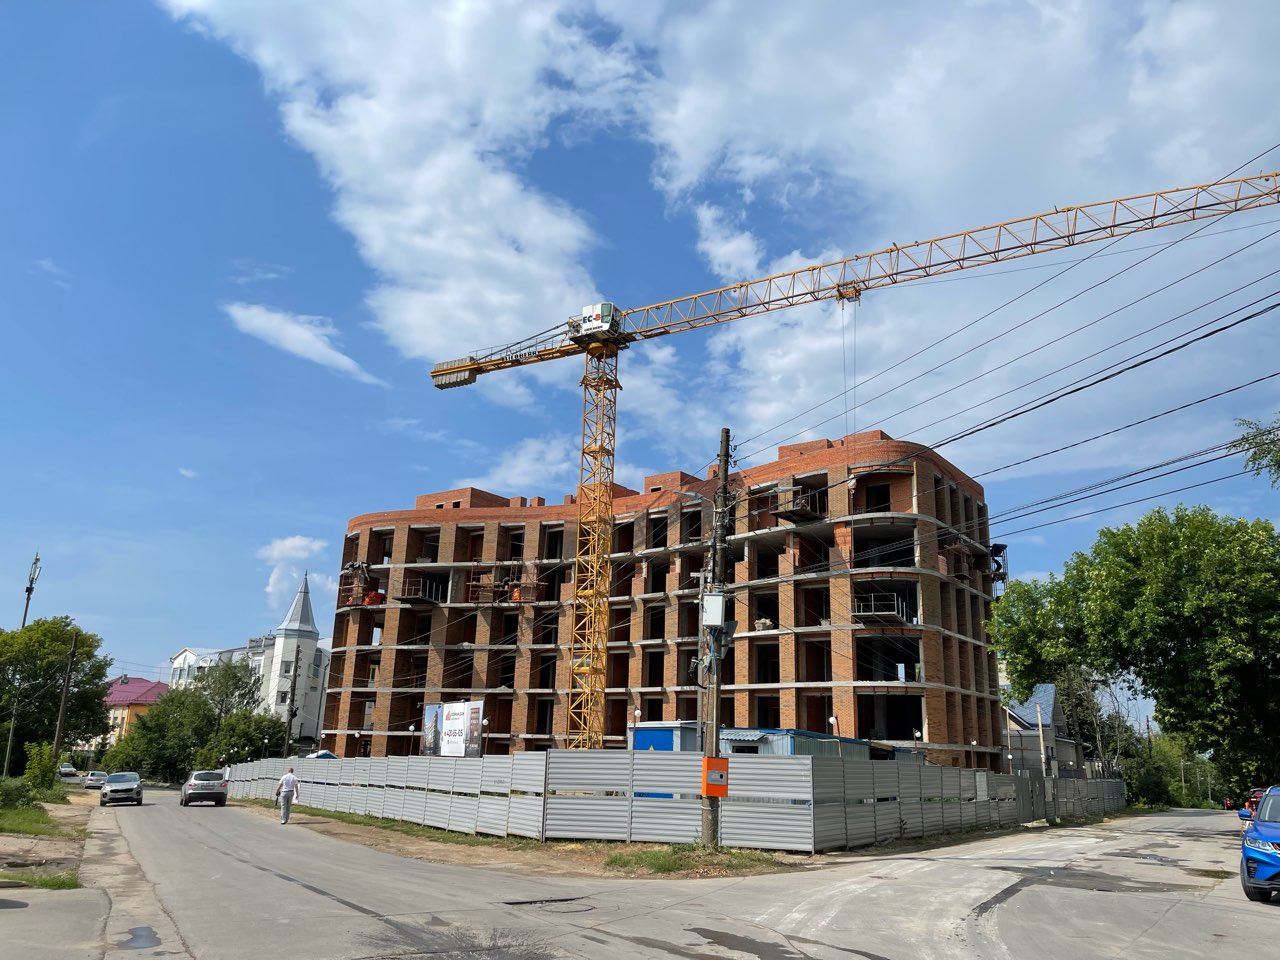 Себестоимость кв. метра жилья в Нижегородской области составила 69,6 тыс. рублей в I полугодии - фото 1